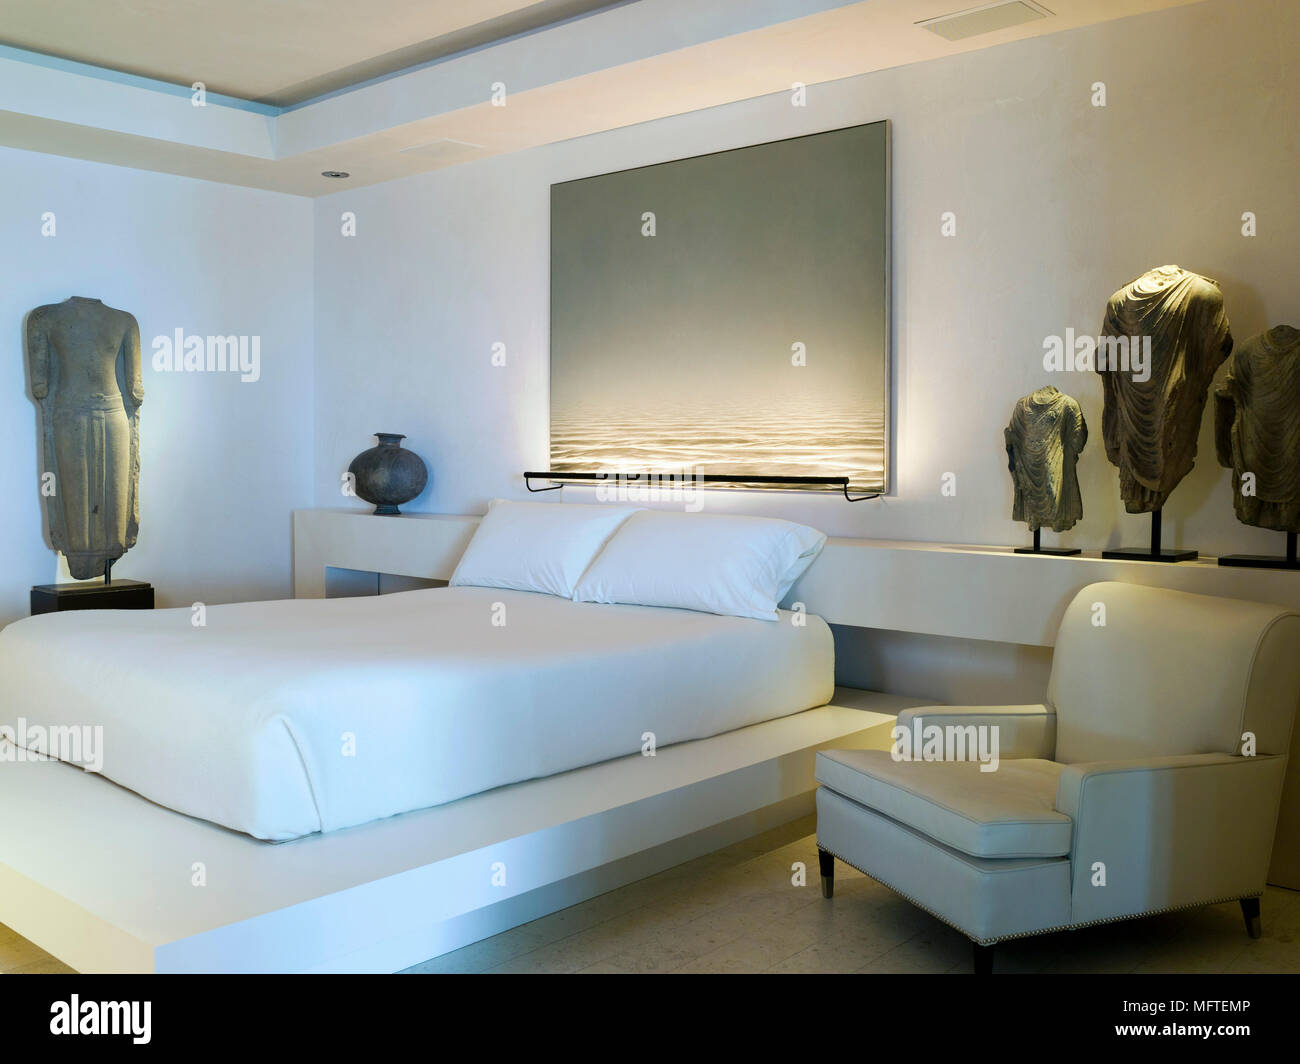 Poltrona accanto alla piattaforma doppia letto matrimoniale in camera da  letto moderna Foto stock - Alamy